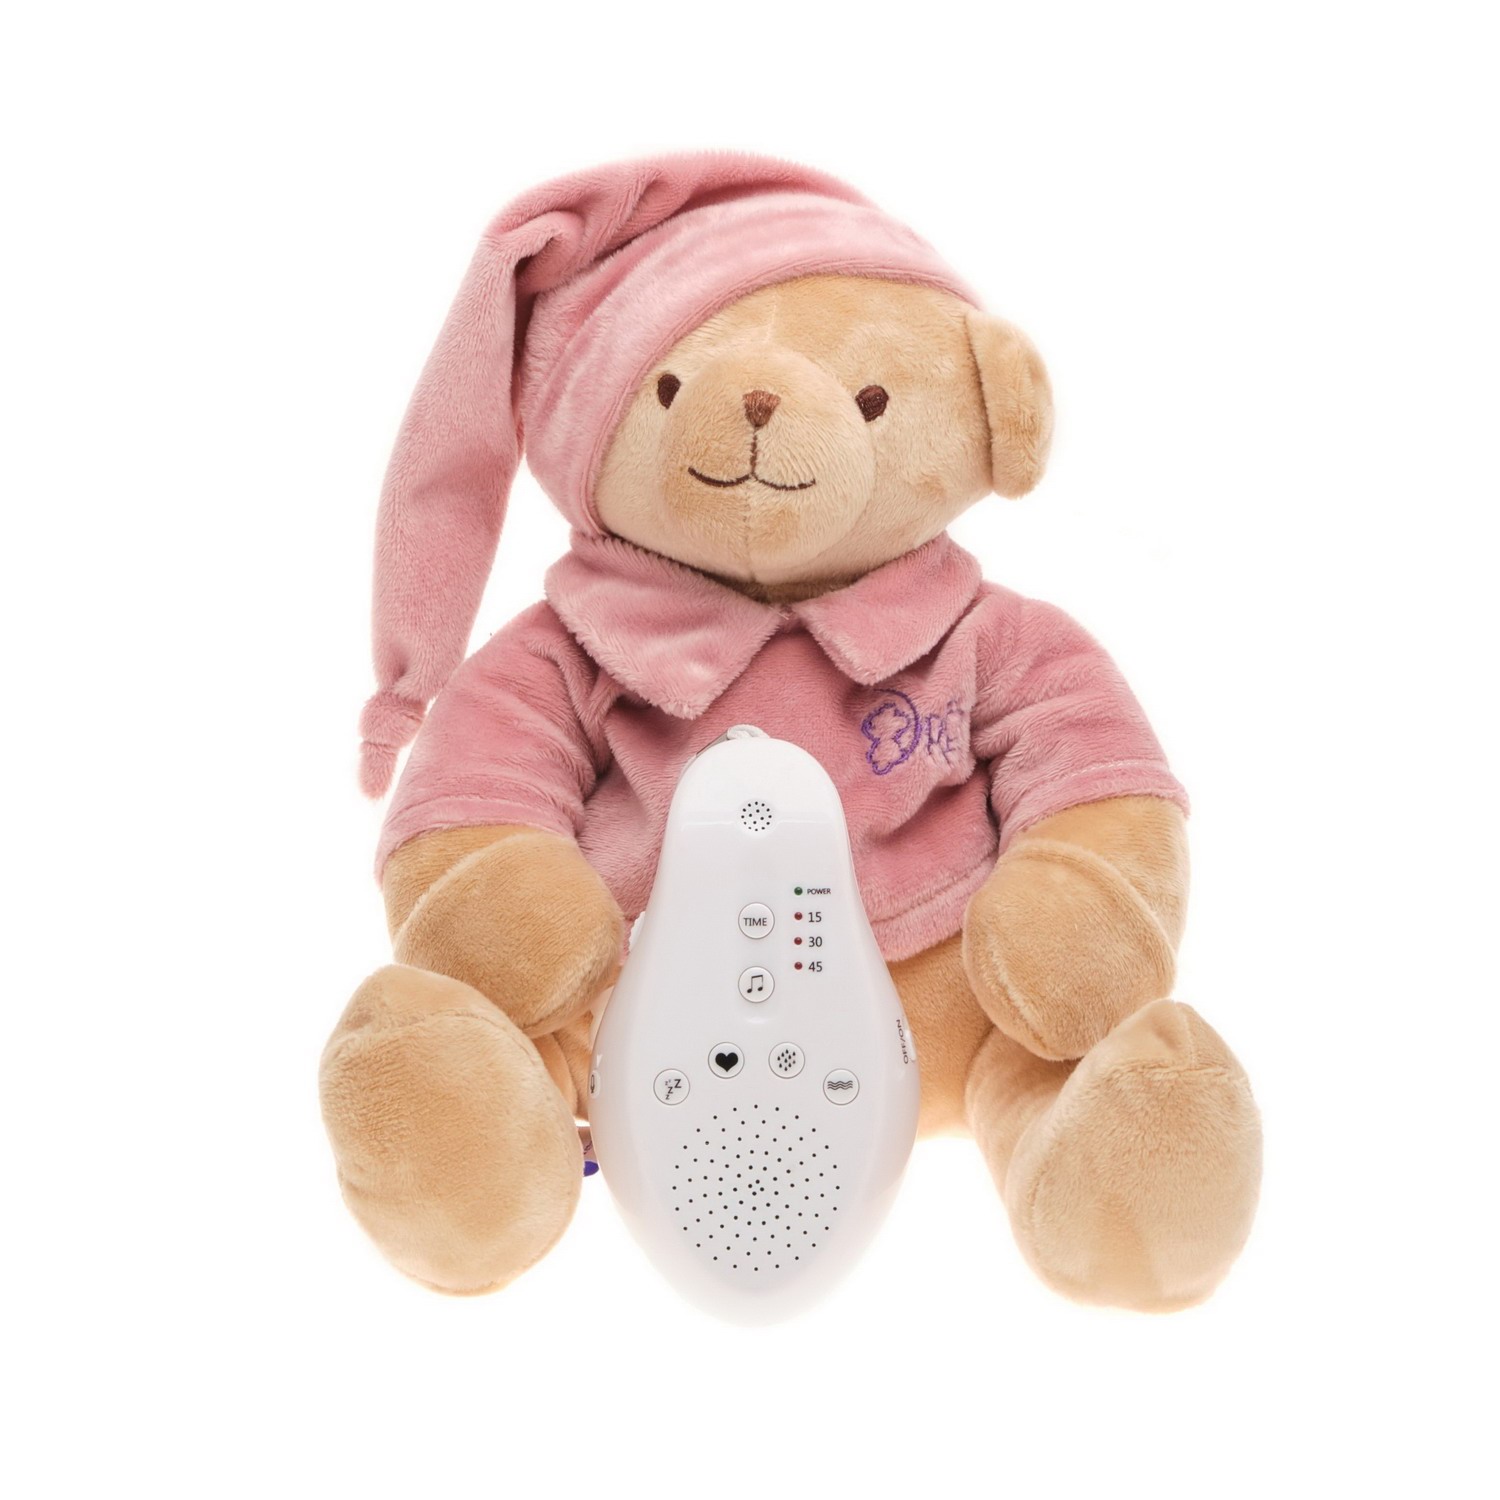 Игрушка DrЁma Мишка с белым и розовым шумом пудровый мягкая игрушка drema babydou мишка в шарфе с белым и розовым шумом